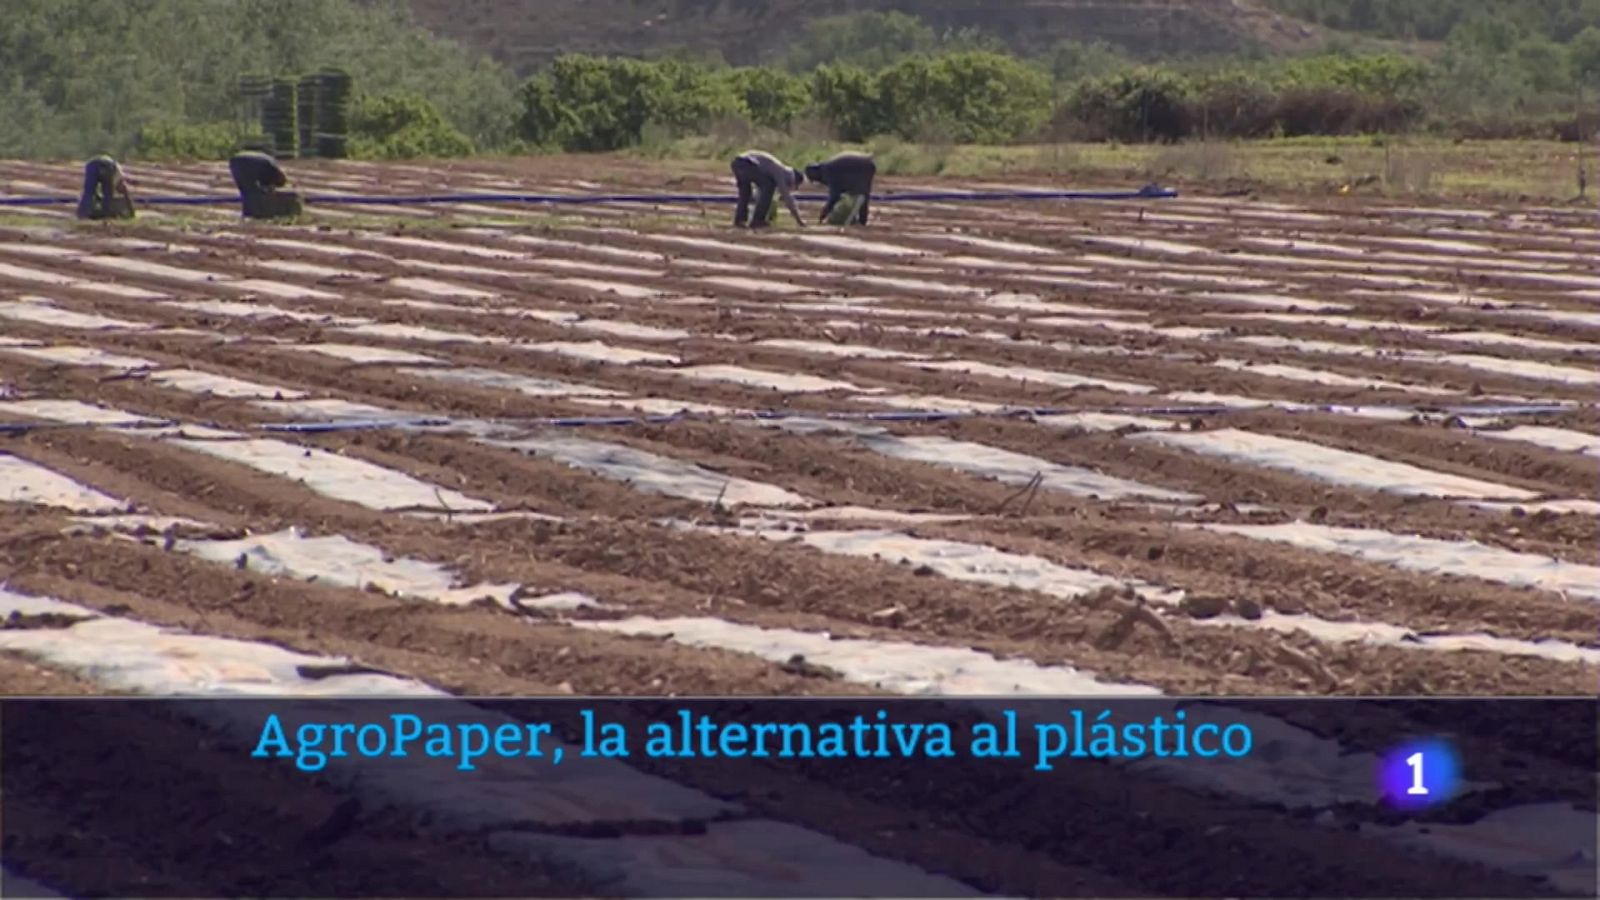 AgroPaper, la altrenativa al plástico en los cultivos